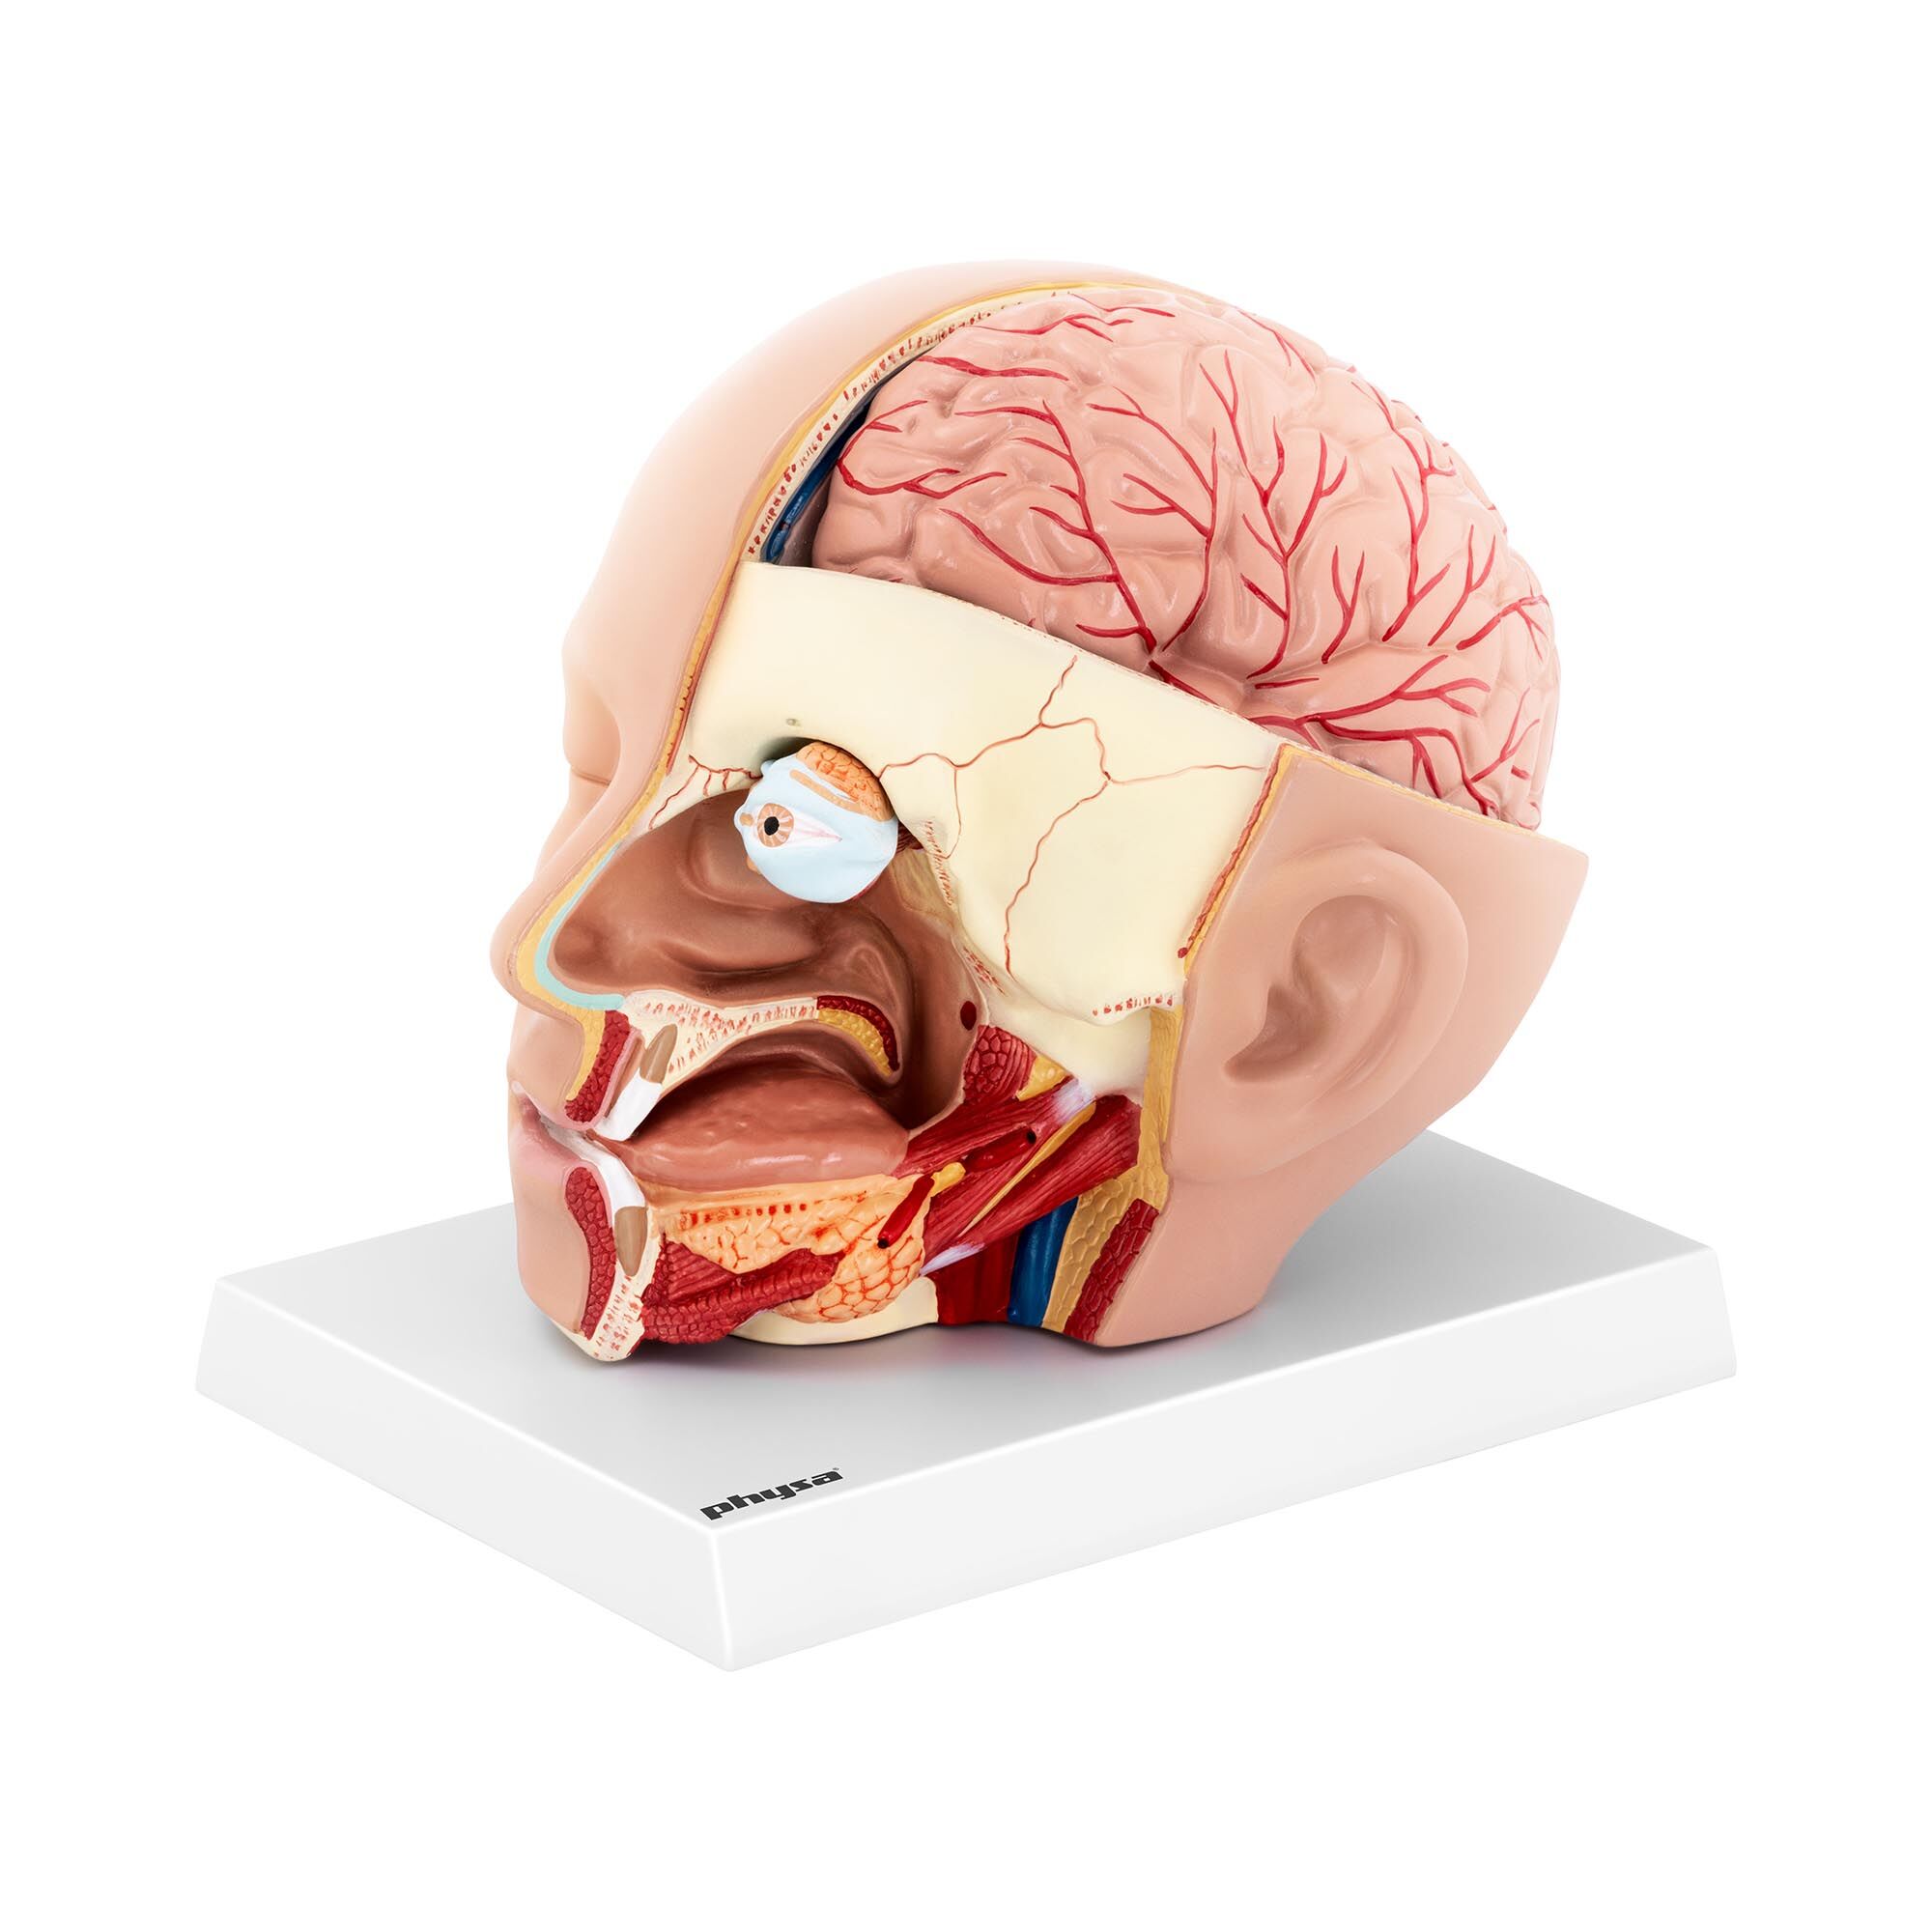 physa Anatomie Schädel - in 4 Teile zerlegbar - Originalgröße 10040336